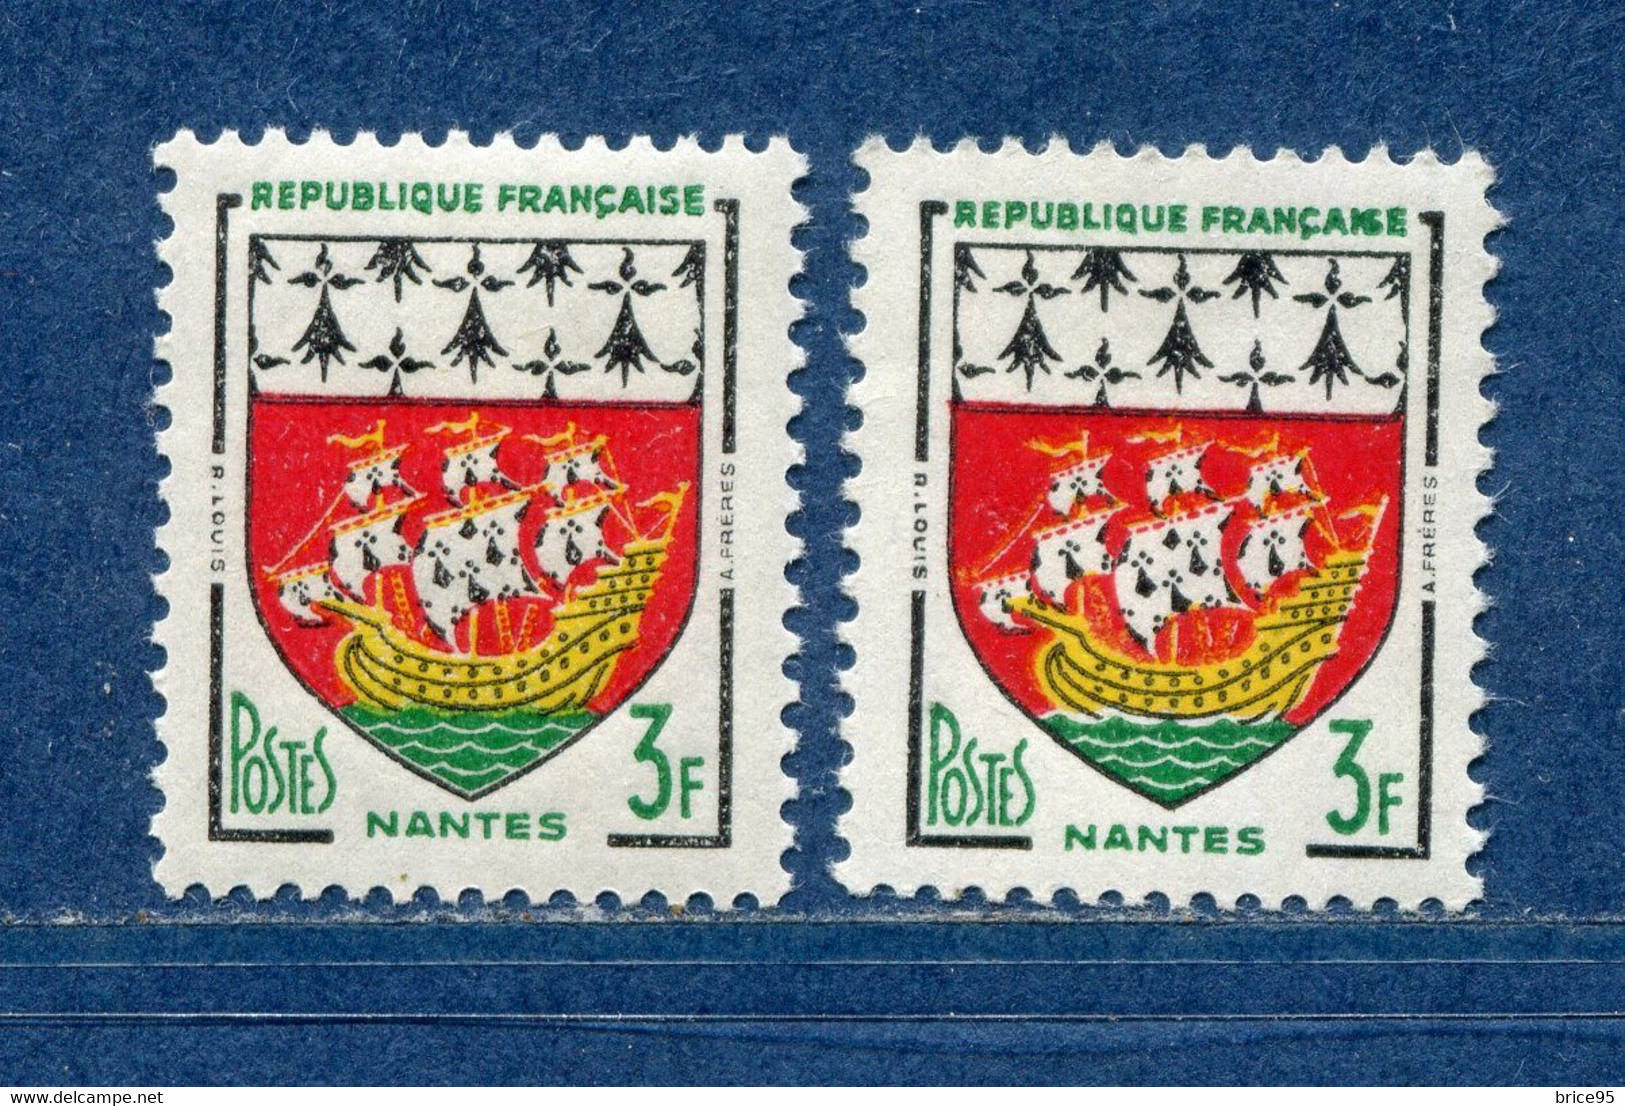 ⭐ France - Variété - YT N° 1185 - Couleurs - Pétouilles - Neuf Sans Charnière - 1958 ⭐ - Unused Stamps